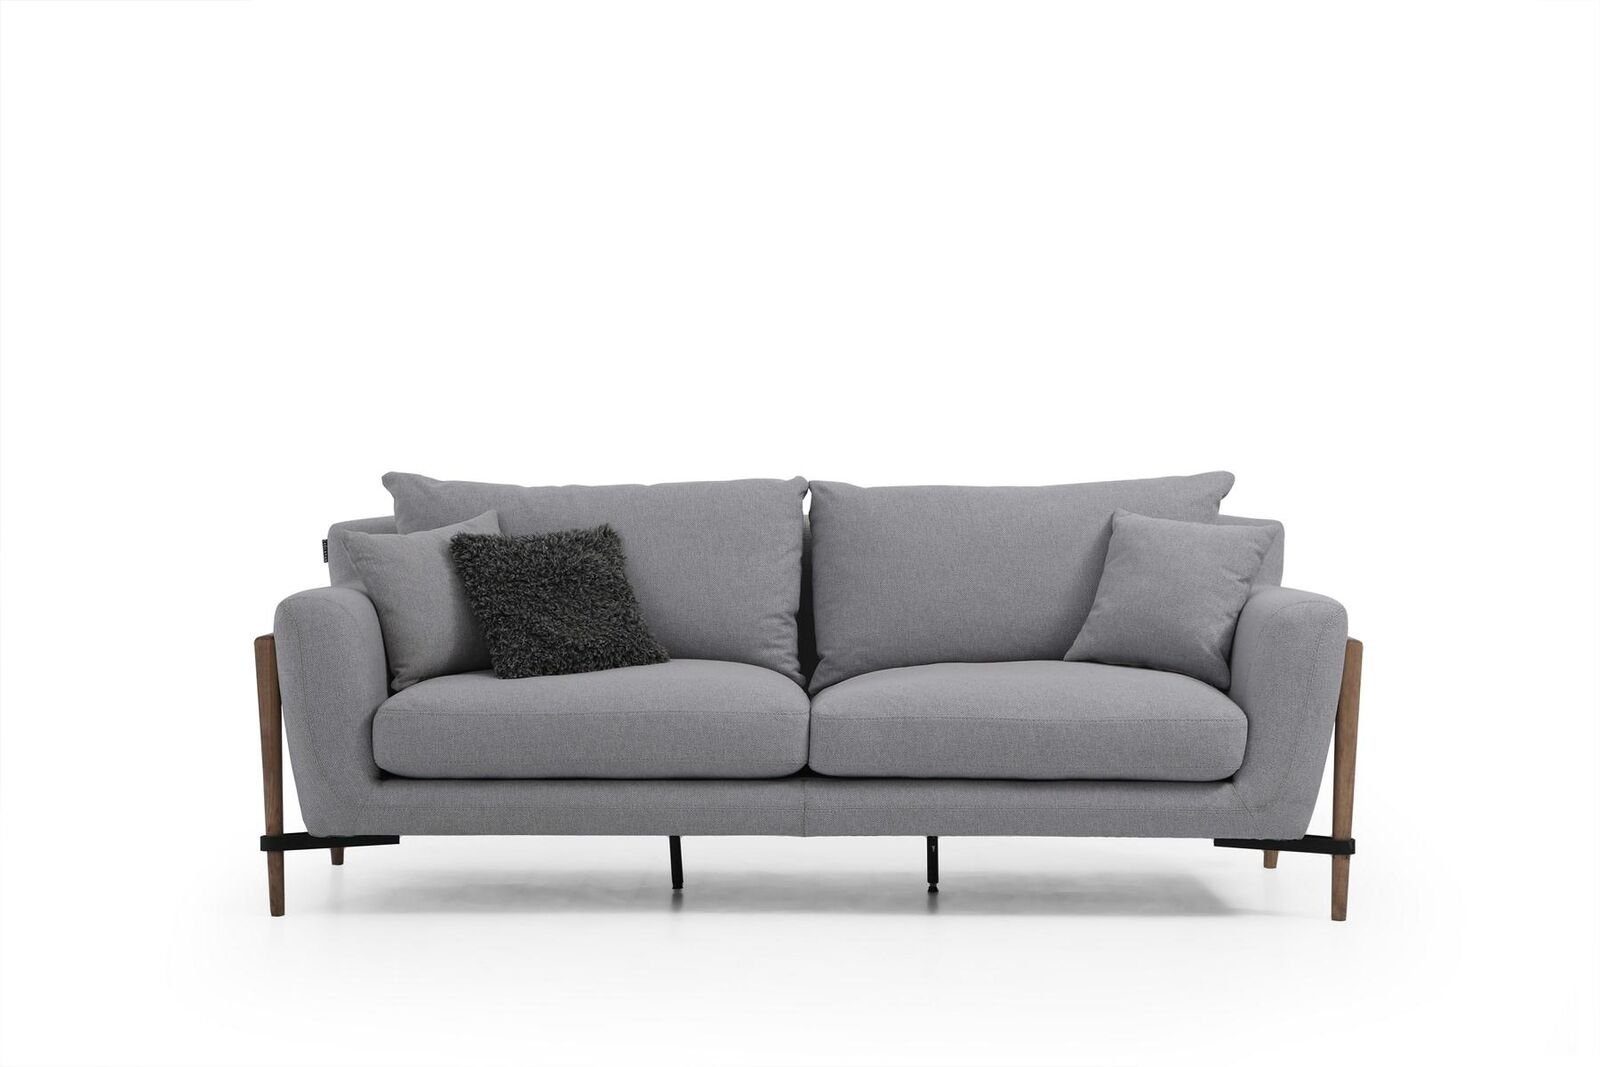 Made Design Sofas Stoff Sitzer 1 JVmoebel in Sofa Dreisitzer Grau, 3 Teile, Modern Europa Wohnzimmer 3-Sitzer